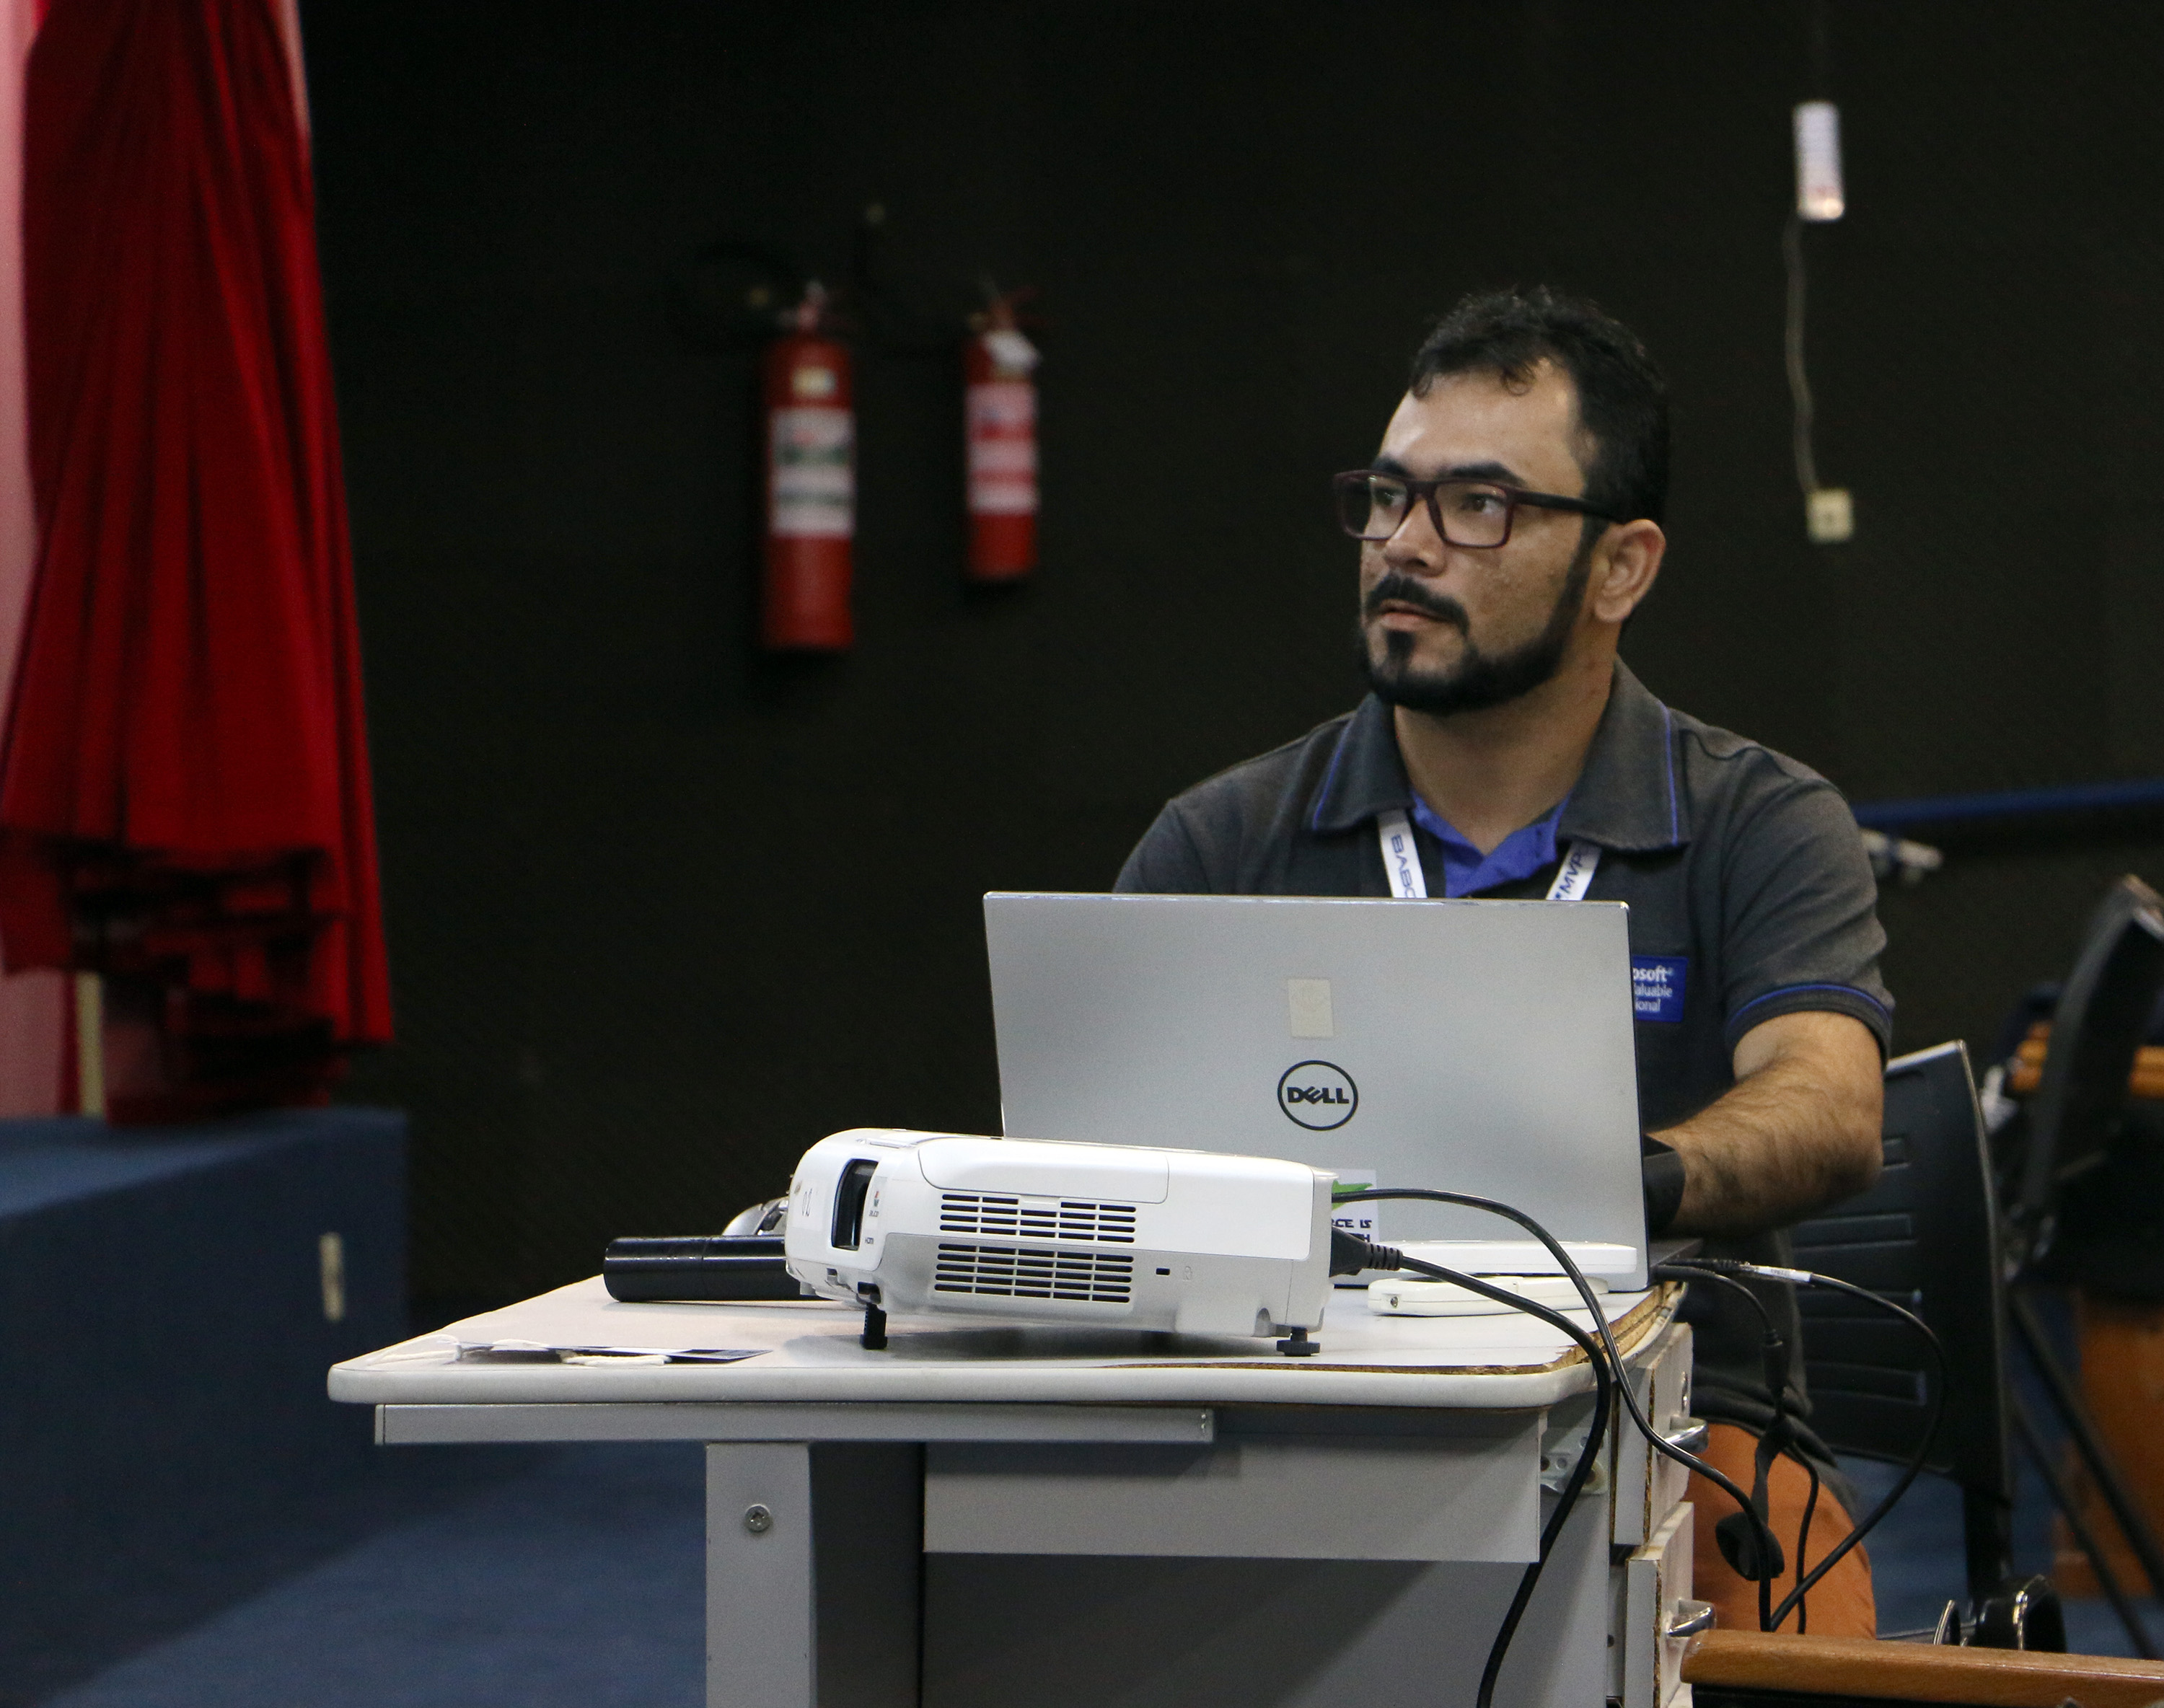 Global Azure Bootcamp2018 - Sergipe